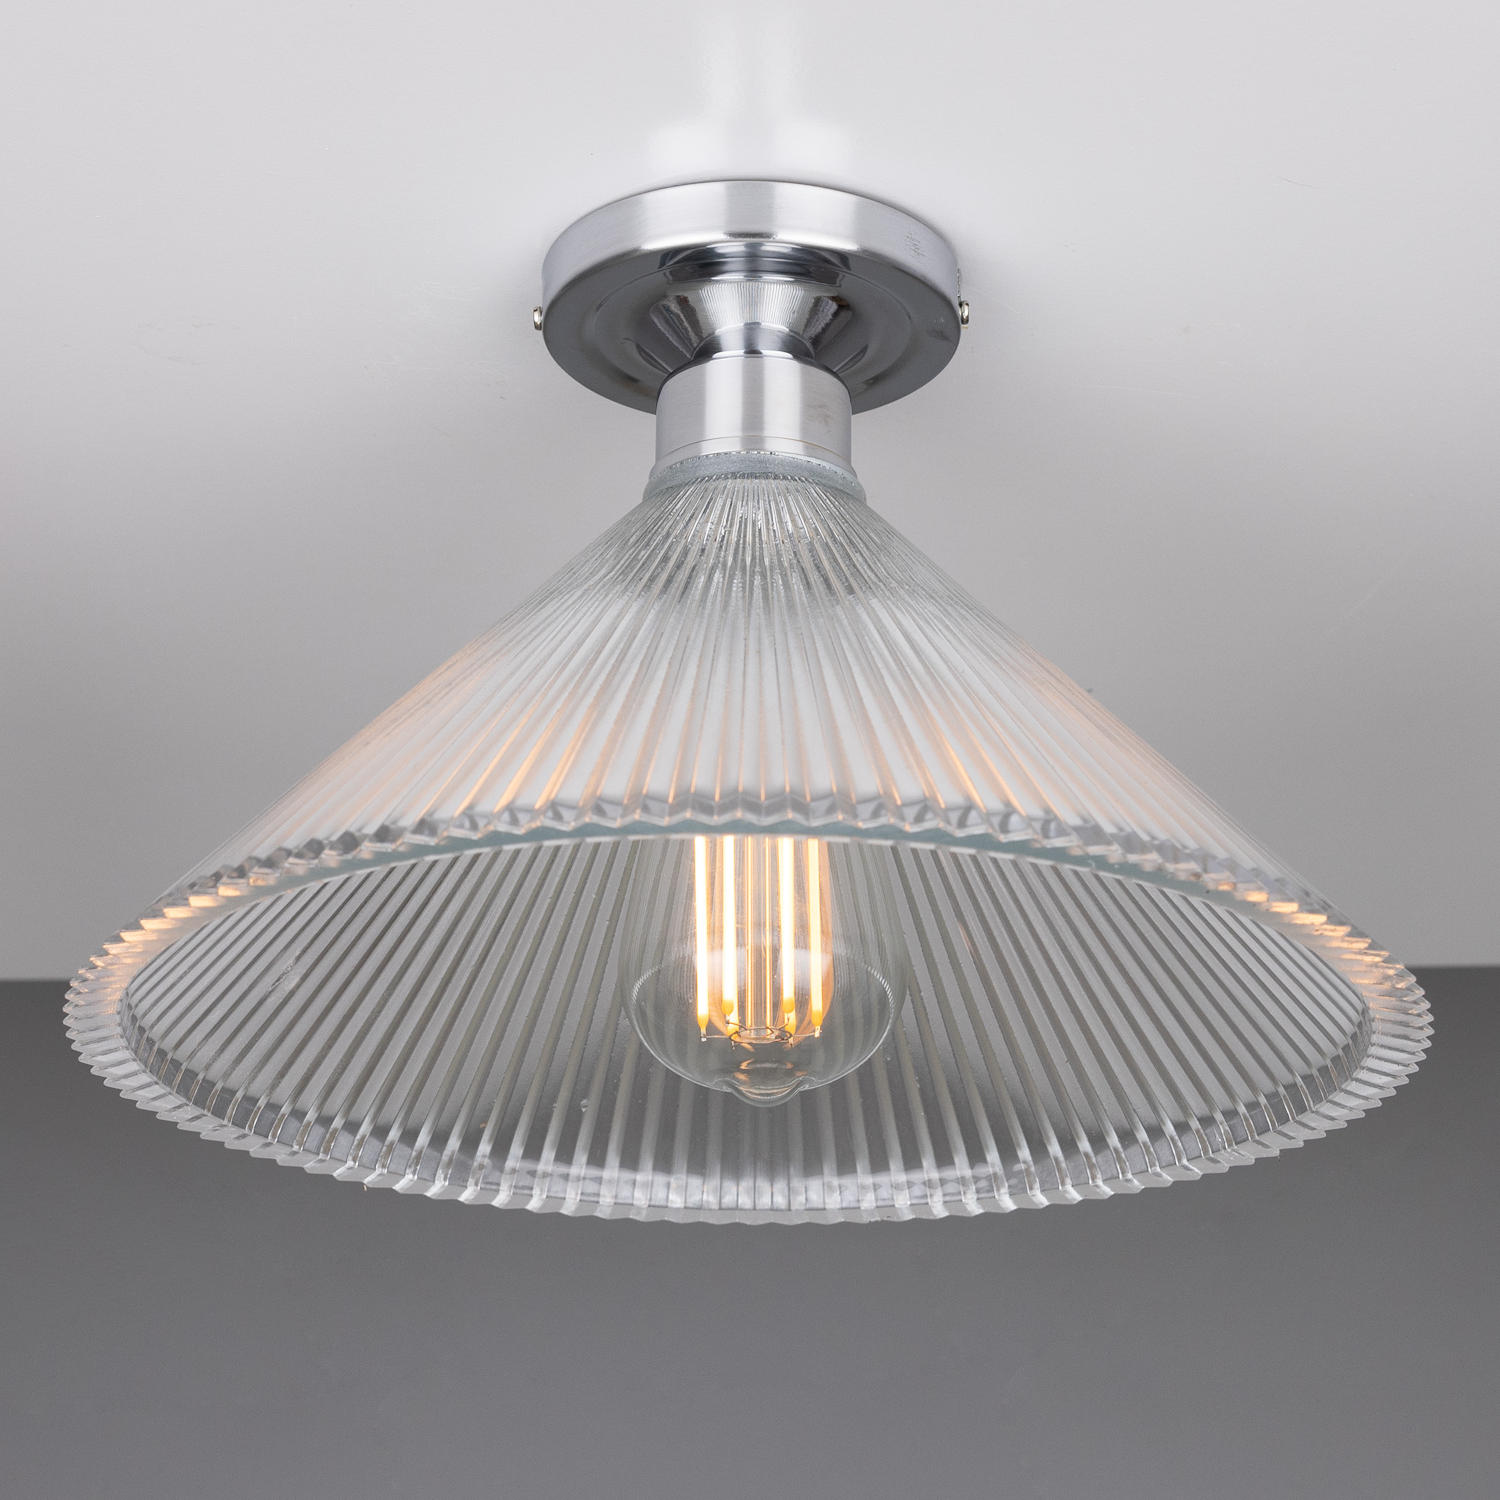 Deckenlampe mit prismatischem Kegel-Glasschirm Ø 30 cm: Chrom poliert